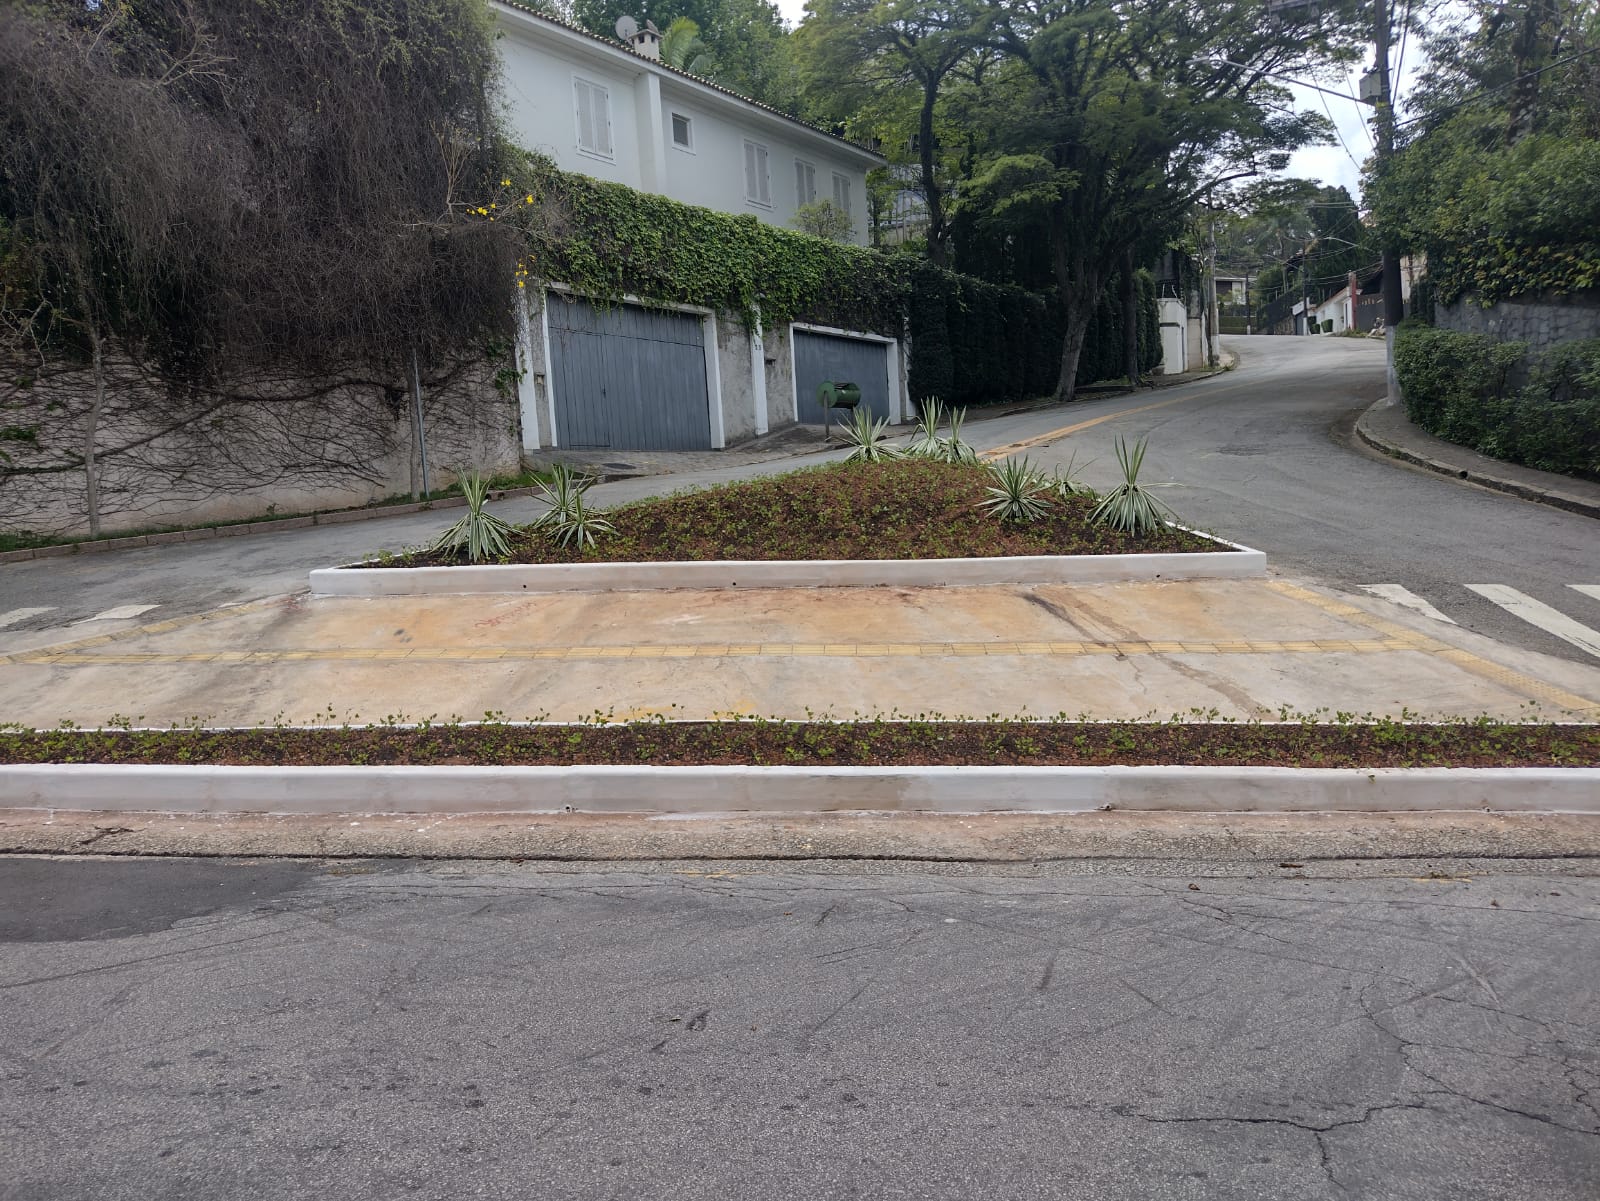 Intervenção do projeto Bairro Protegido na rua Raulino de Oliveira com av Lopes de Azevedo.